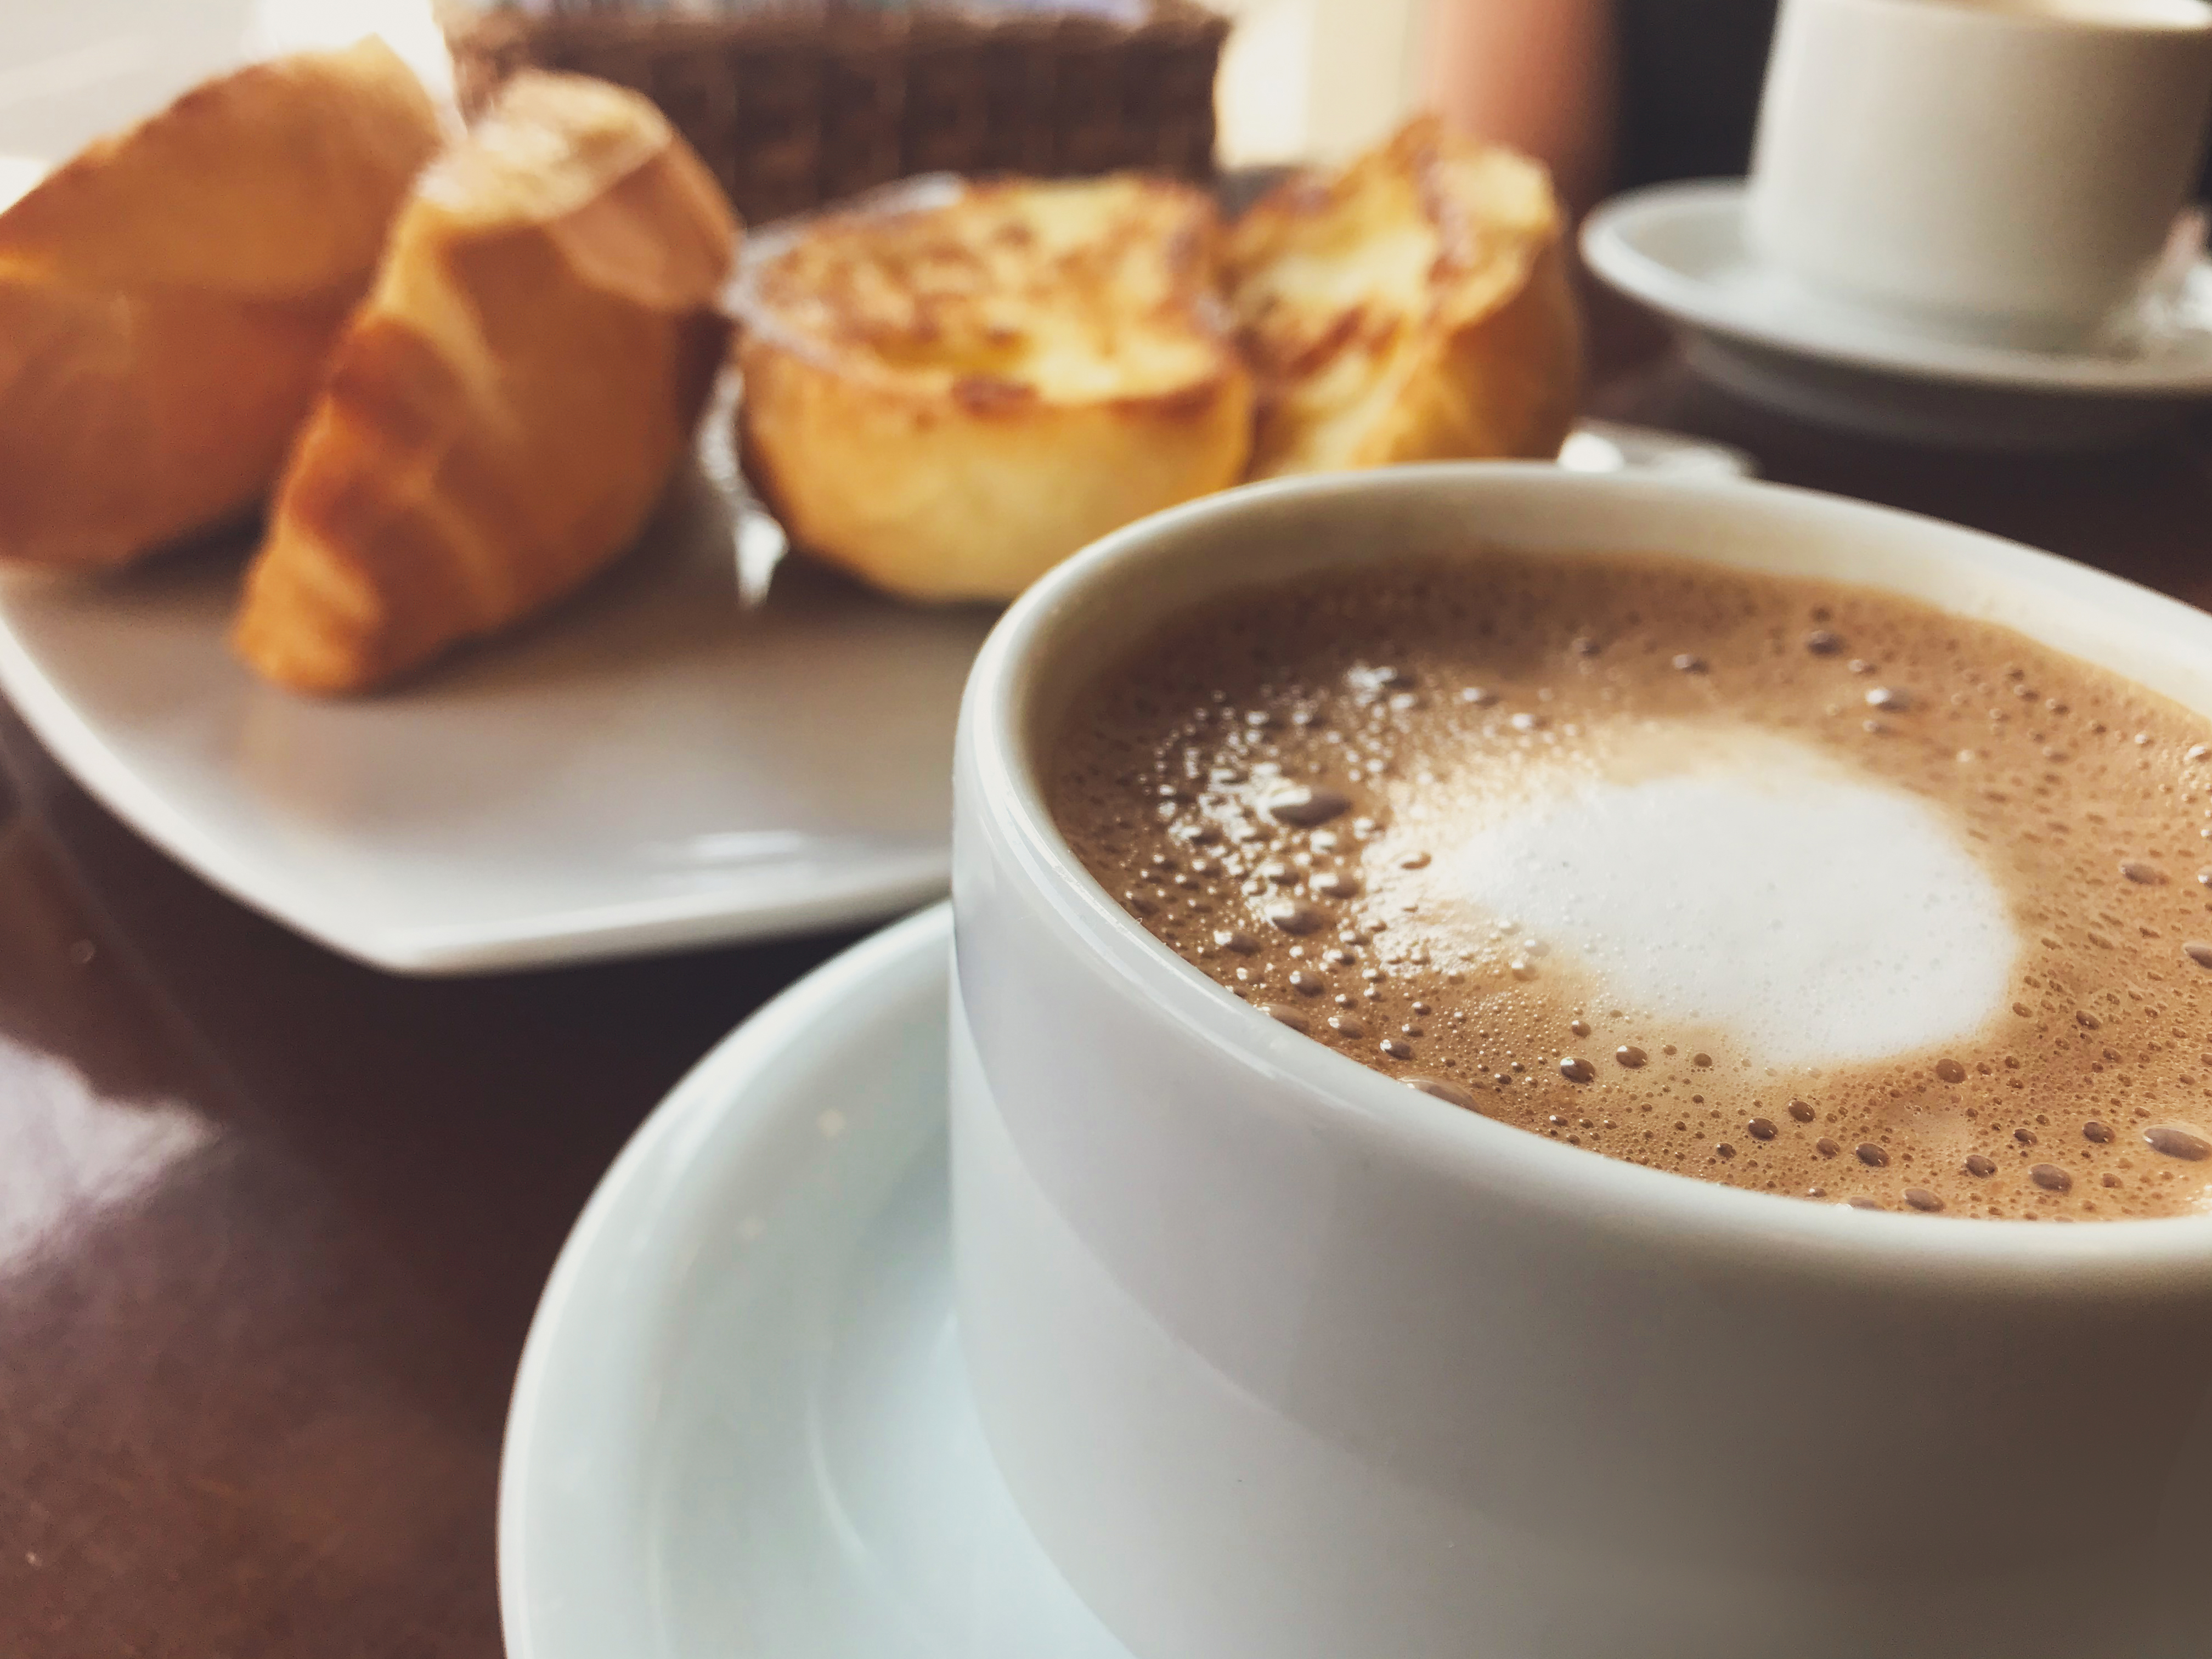 <p><strong>Пиете кафе преди закуската</strong></p>

<p>Кафето на гладно е опасно за стомаха. То е с висока киселинност и може да обостри различни стомашни проблеми, като гастрит, язва и рефлукс. Кофеинът на гладно предизвиква скок в хормоните на стреса адреналин и кортизол, които причиняват допълнителни здравословни проблеми и наднормено тегло.</p>